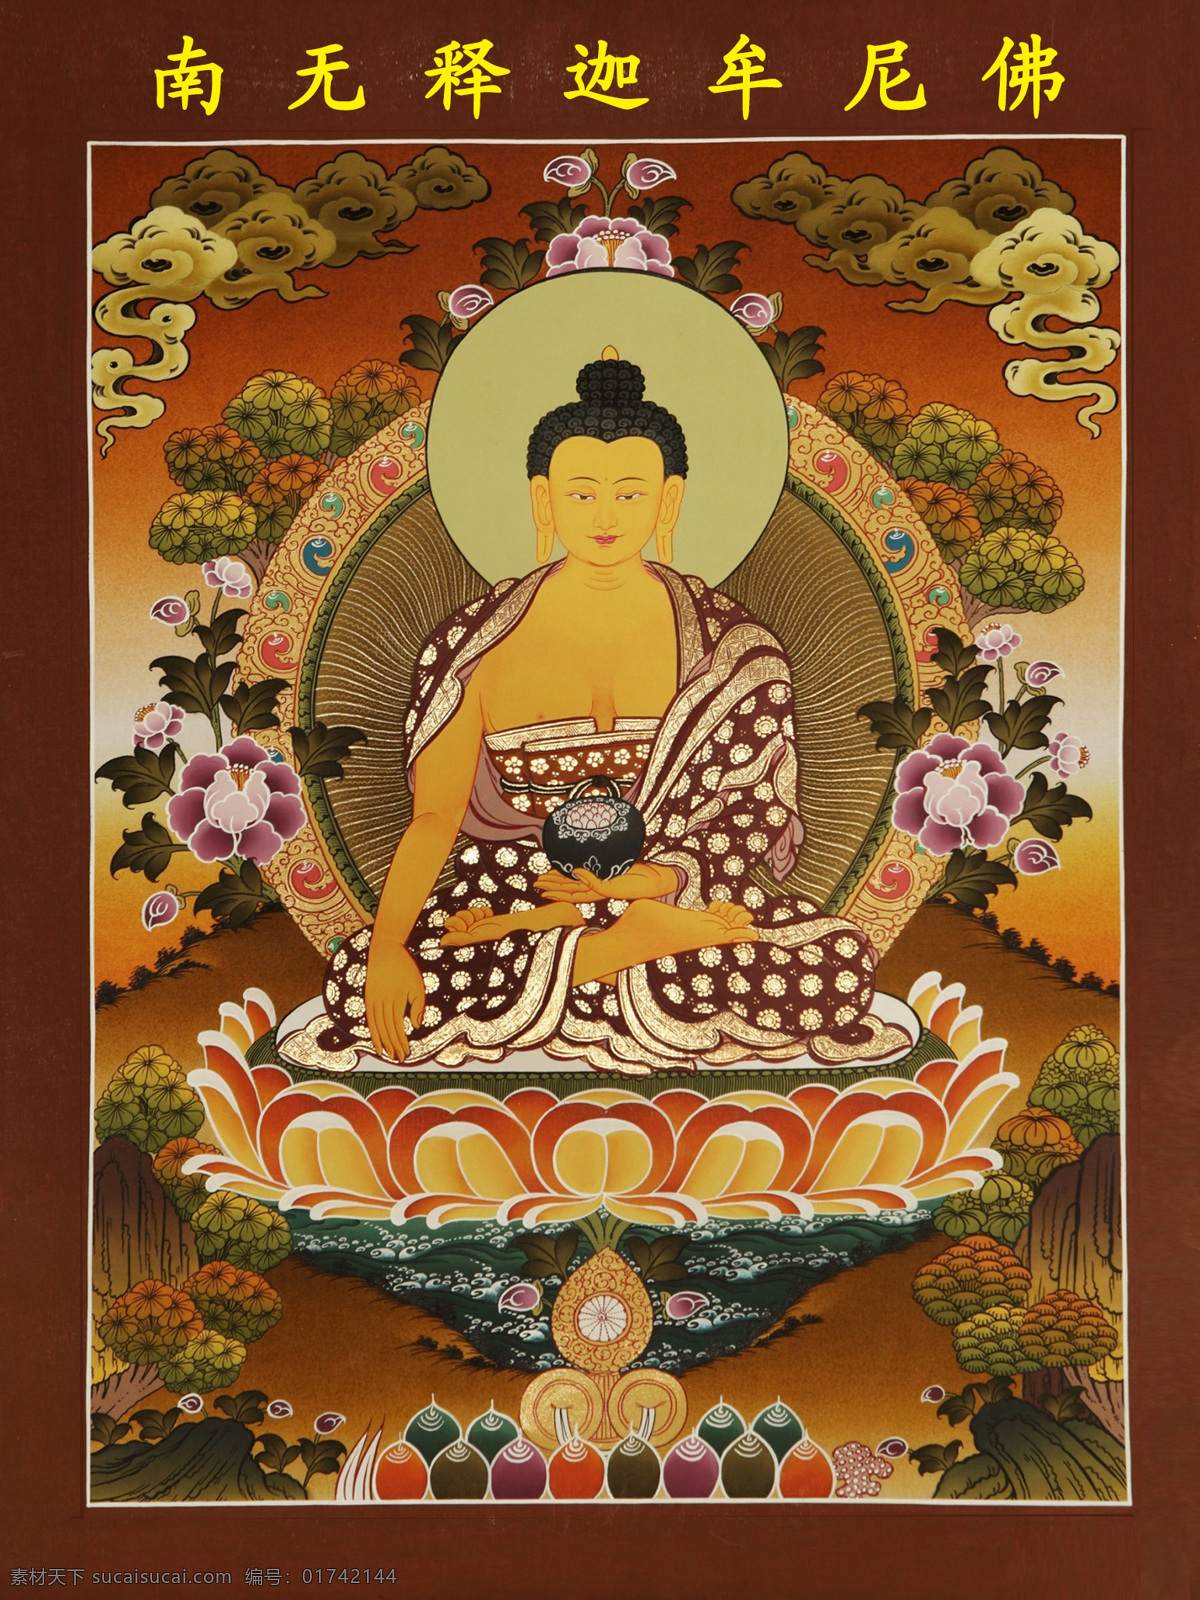 释迦牟尼 佛 佛祖 如来 文化艺术 宗教信仰 8寸 释迦佛 装饰素材 室内装饰用图